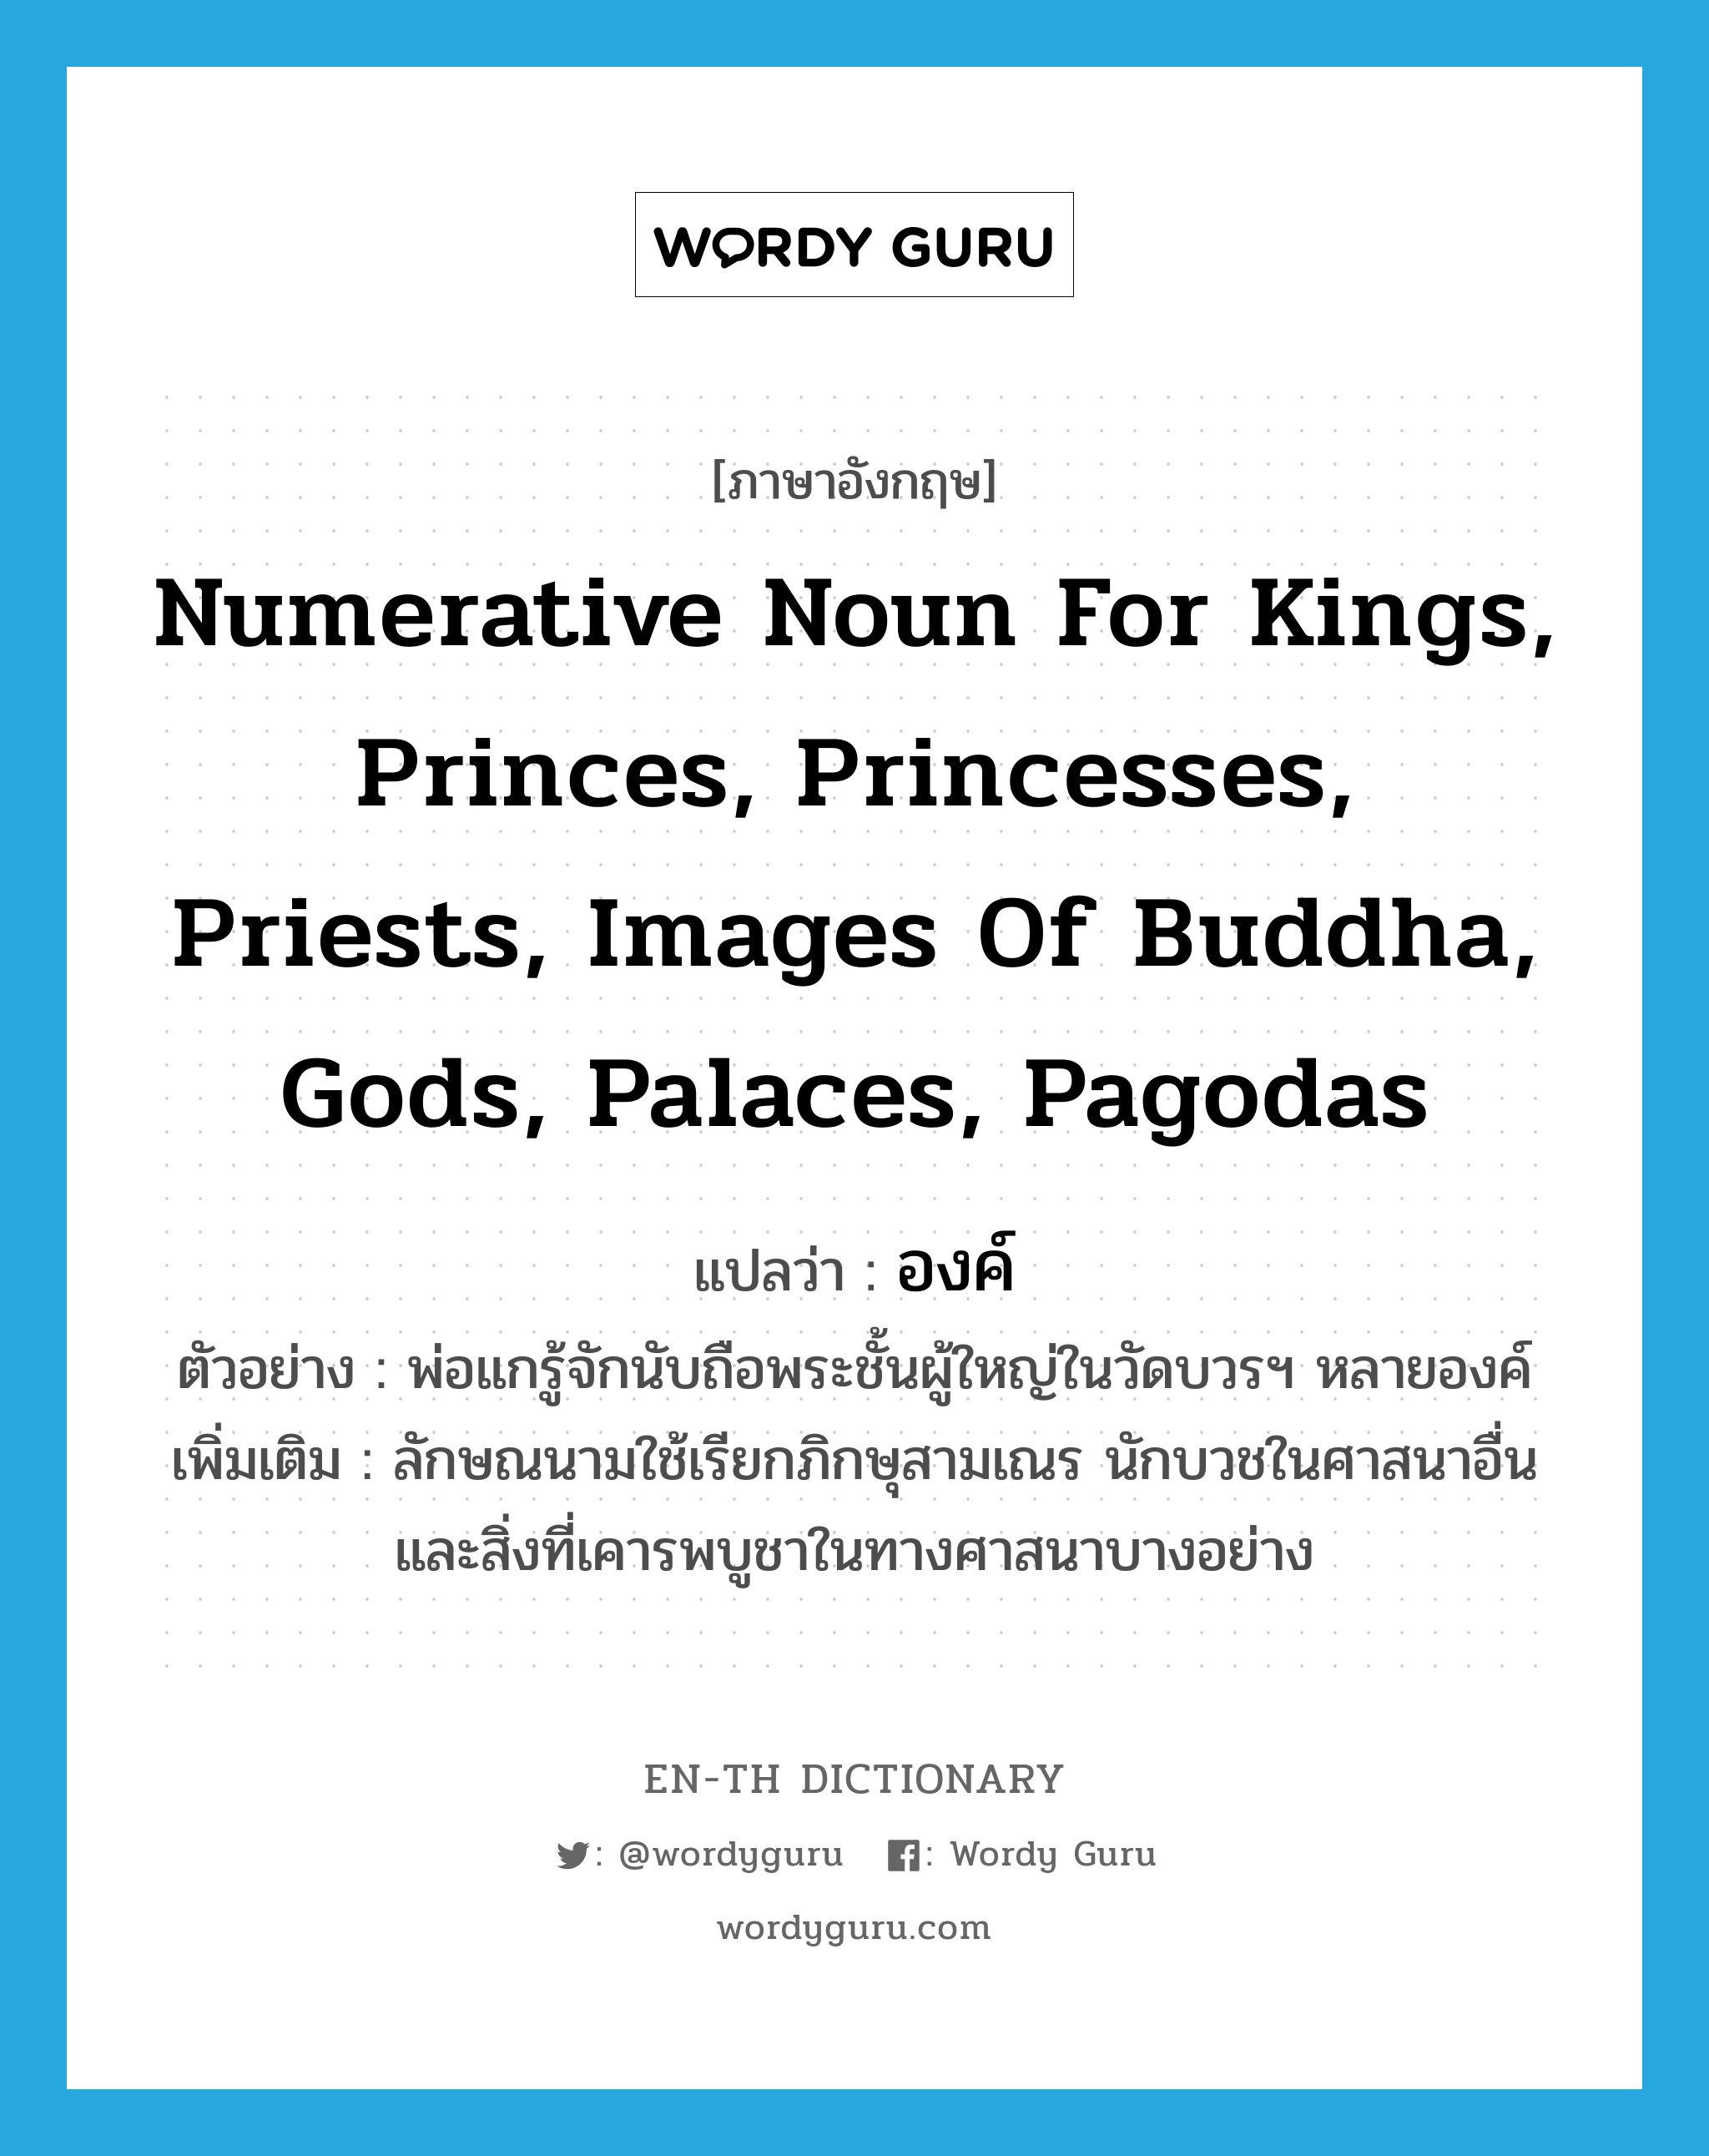 องค์ ภาษาอังกฤษ?, คำศัพท์ภาษาอังกฤษ องค์ แปลว่า numerative noun for kings, princes, princesses, priests, images of Buddha, gods, palaces, pagodas ประเภท N ตัวอย่าง พ่อแกรู้จักนับถือพระชั้นผู้ใหญ่ในวัดบวรฯ หลายองค์ เพิ่มเติม ลักษณนามใช้เรียกภิกษุสามเณร นักบวชในศาสนาอื่น และสิ่งที่เคารพบูชาในทางศาสนาบางอย่าง หมวด N